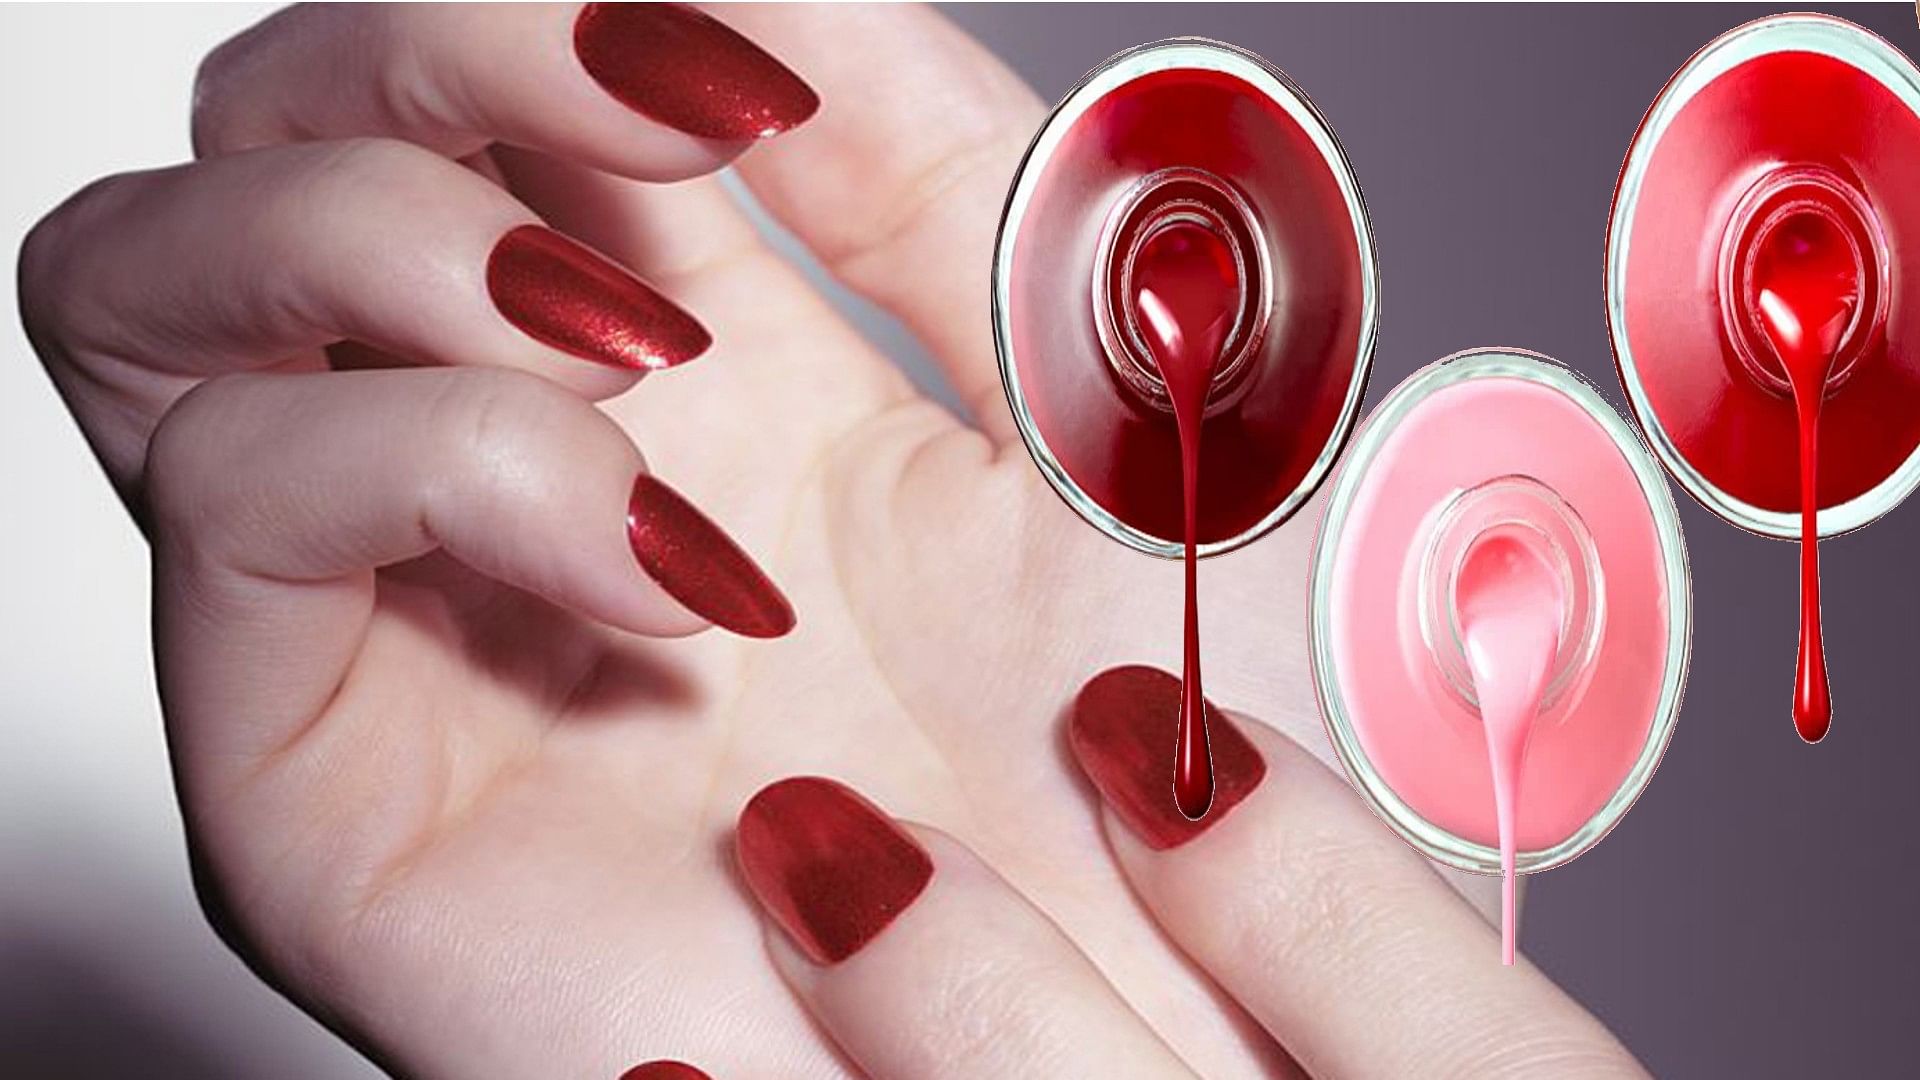 नेल पॉलिश लगाने का सही तरीका जान लीजिए, नाखून खूबसूरत भी दिखेंगे और इनकी  चमक भी नहीं जाएगी | right way to apply nail polish | TV9 Bharatvarsh